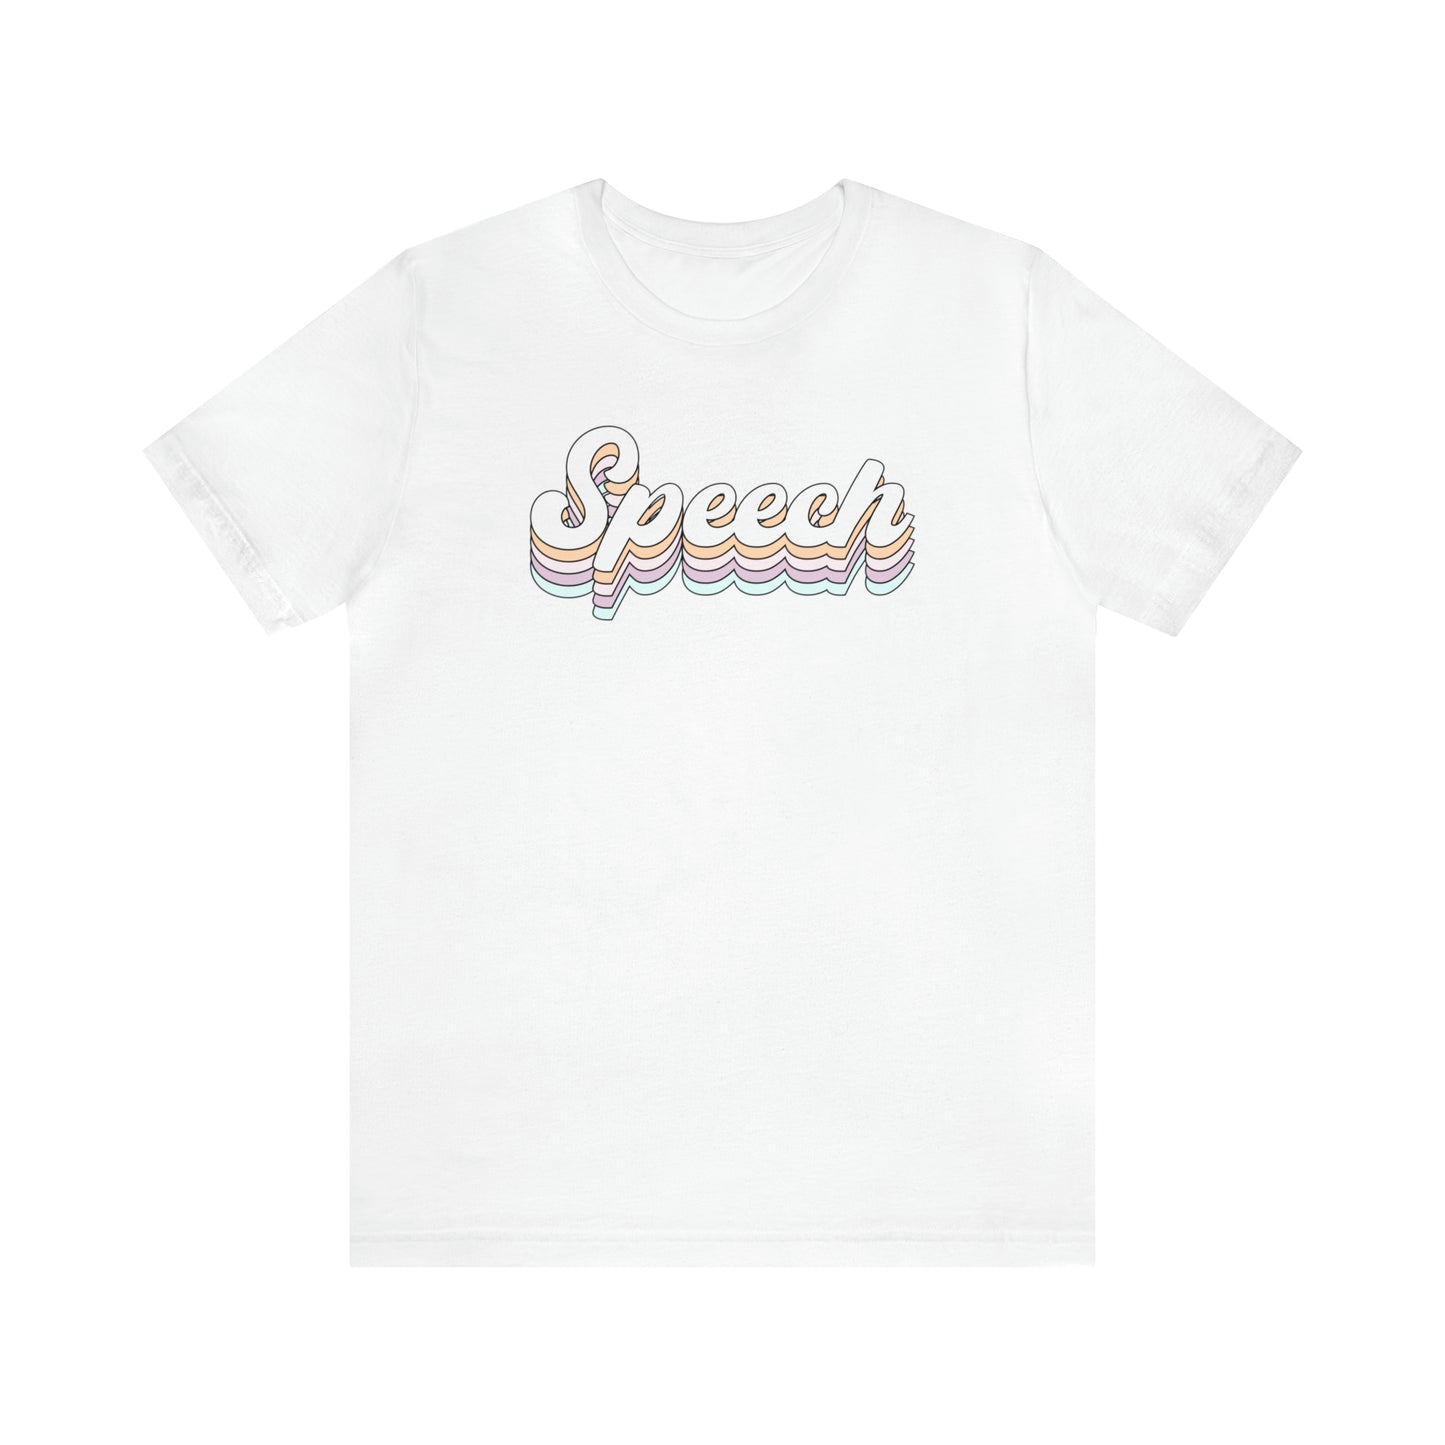 Retro Speech Jersey T-Shirt